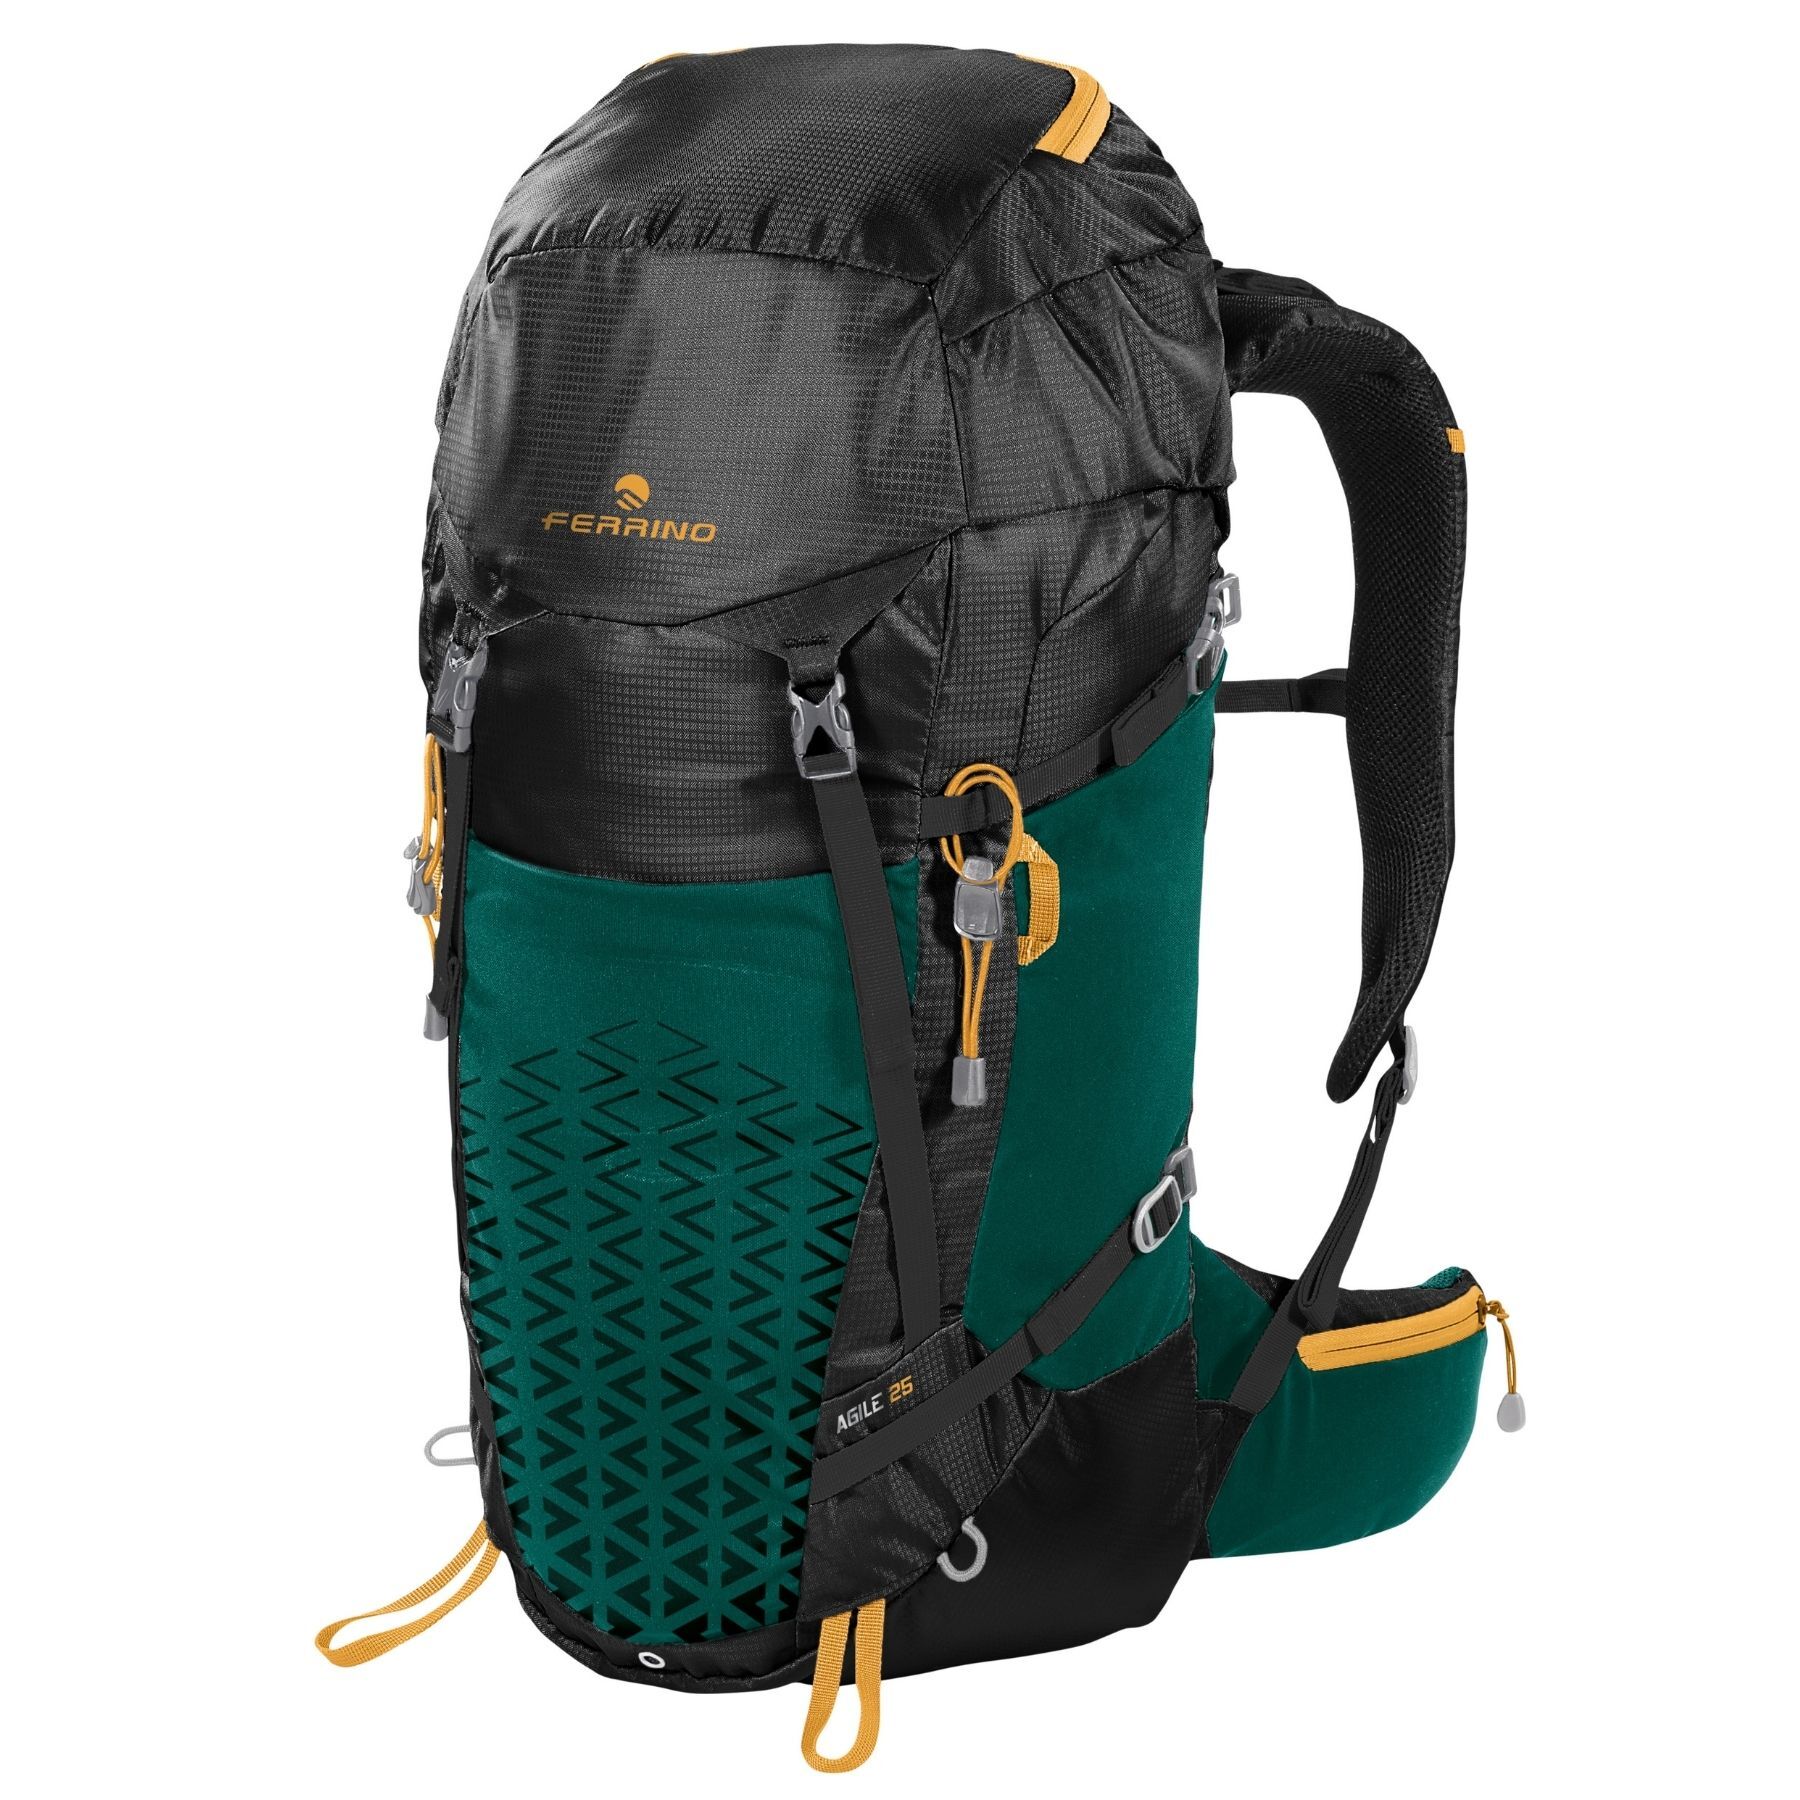 Ferrino Agile 25 - Walking backpack